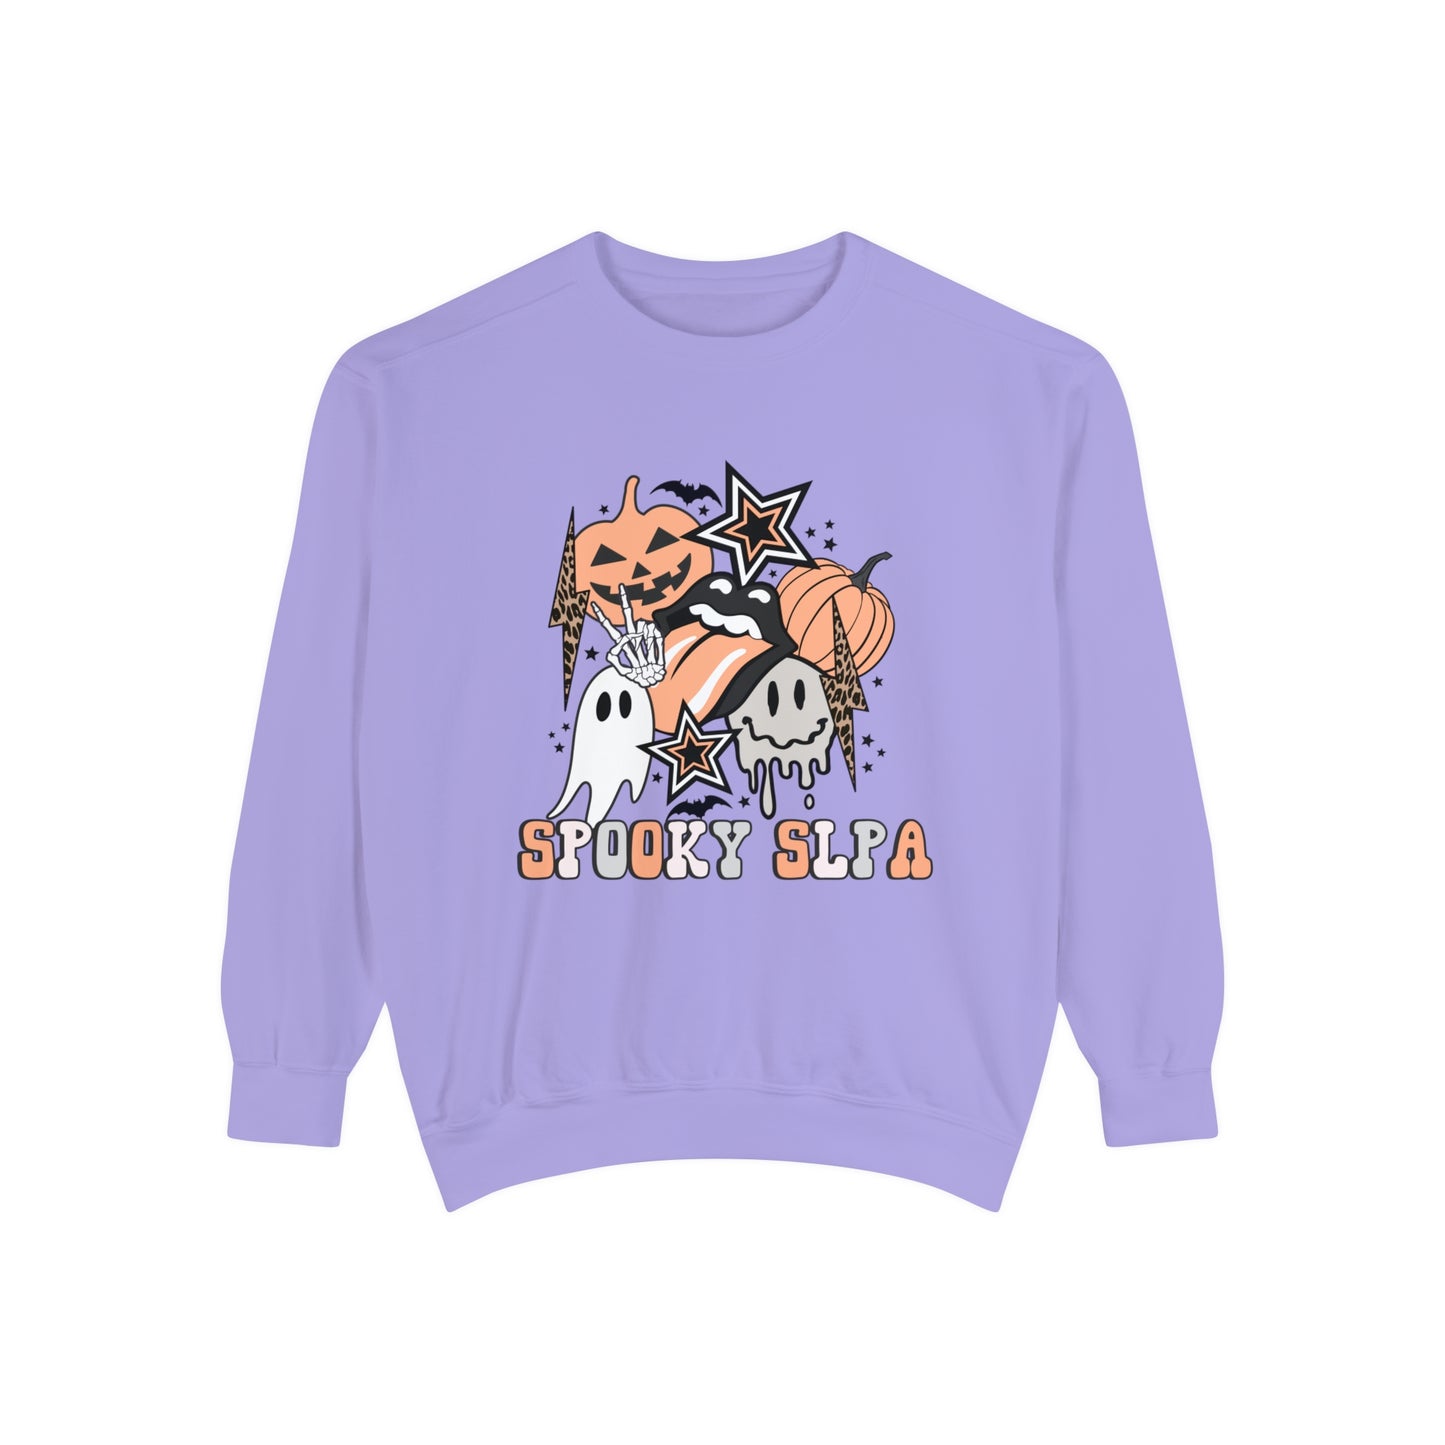 Spooky SLPA Retro Halloween Comfort Colors Sweatshirt